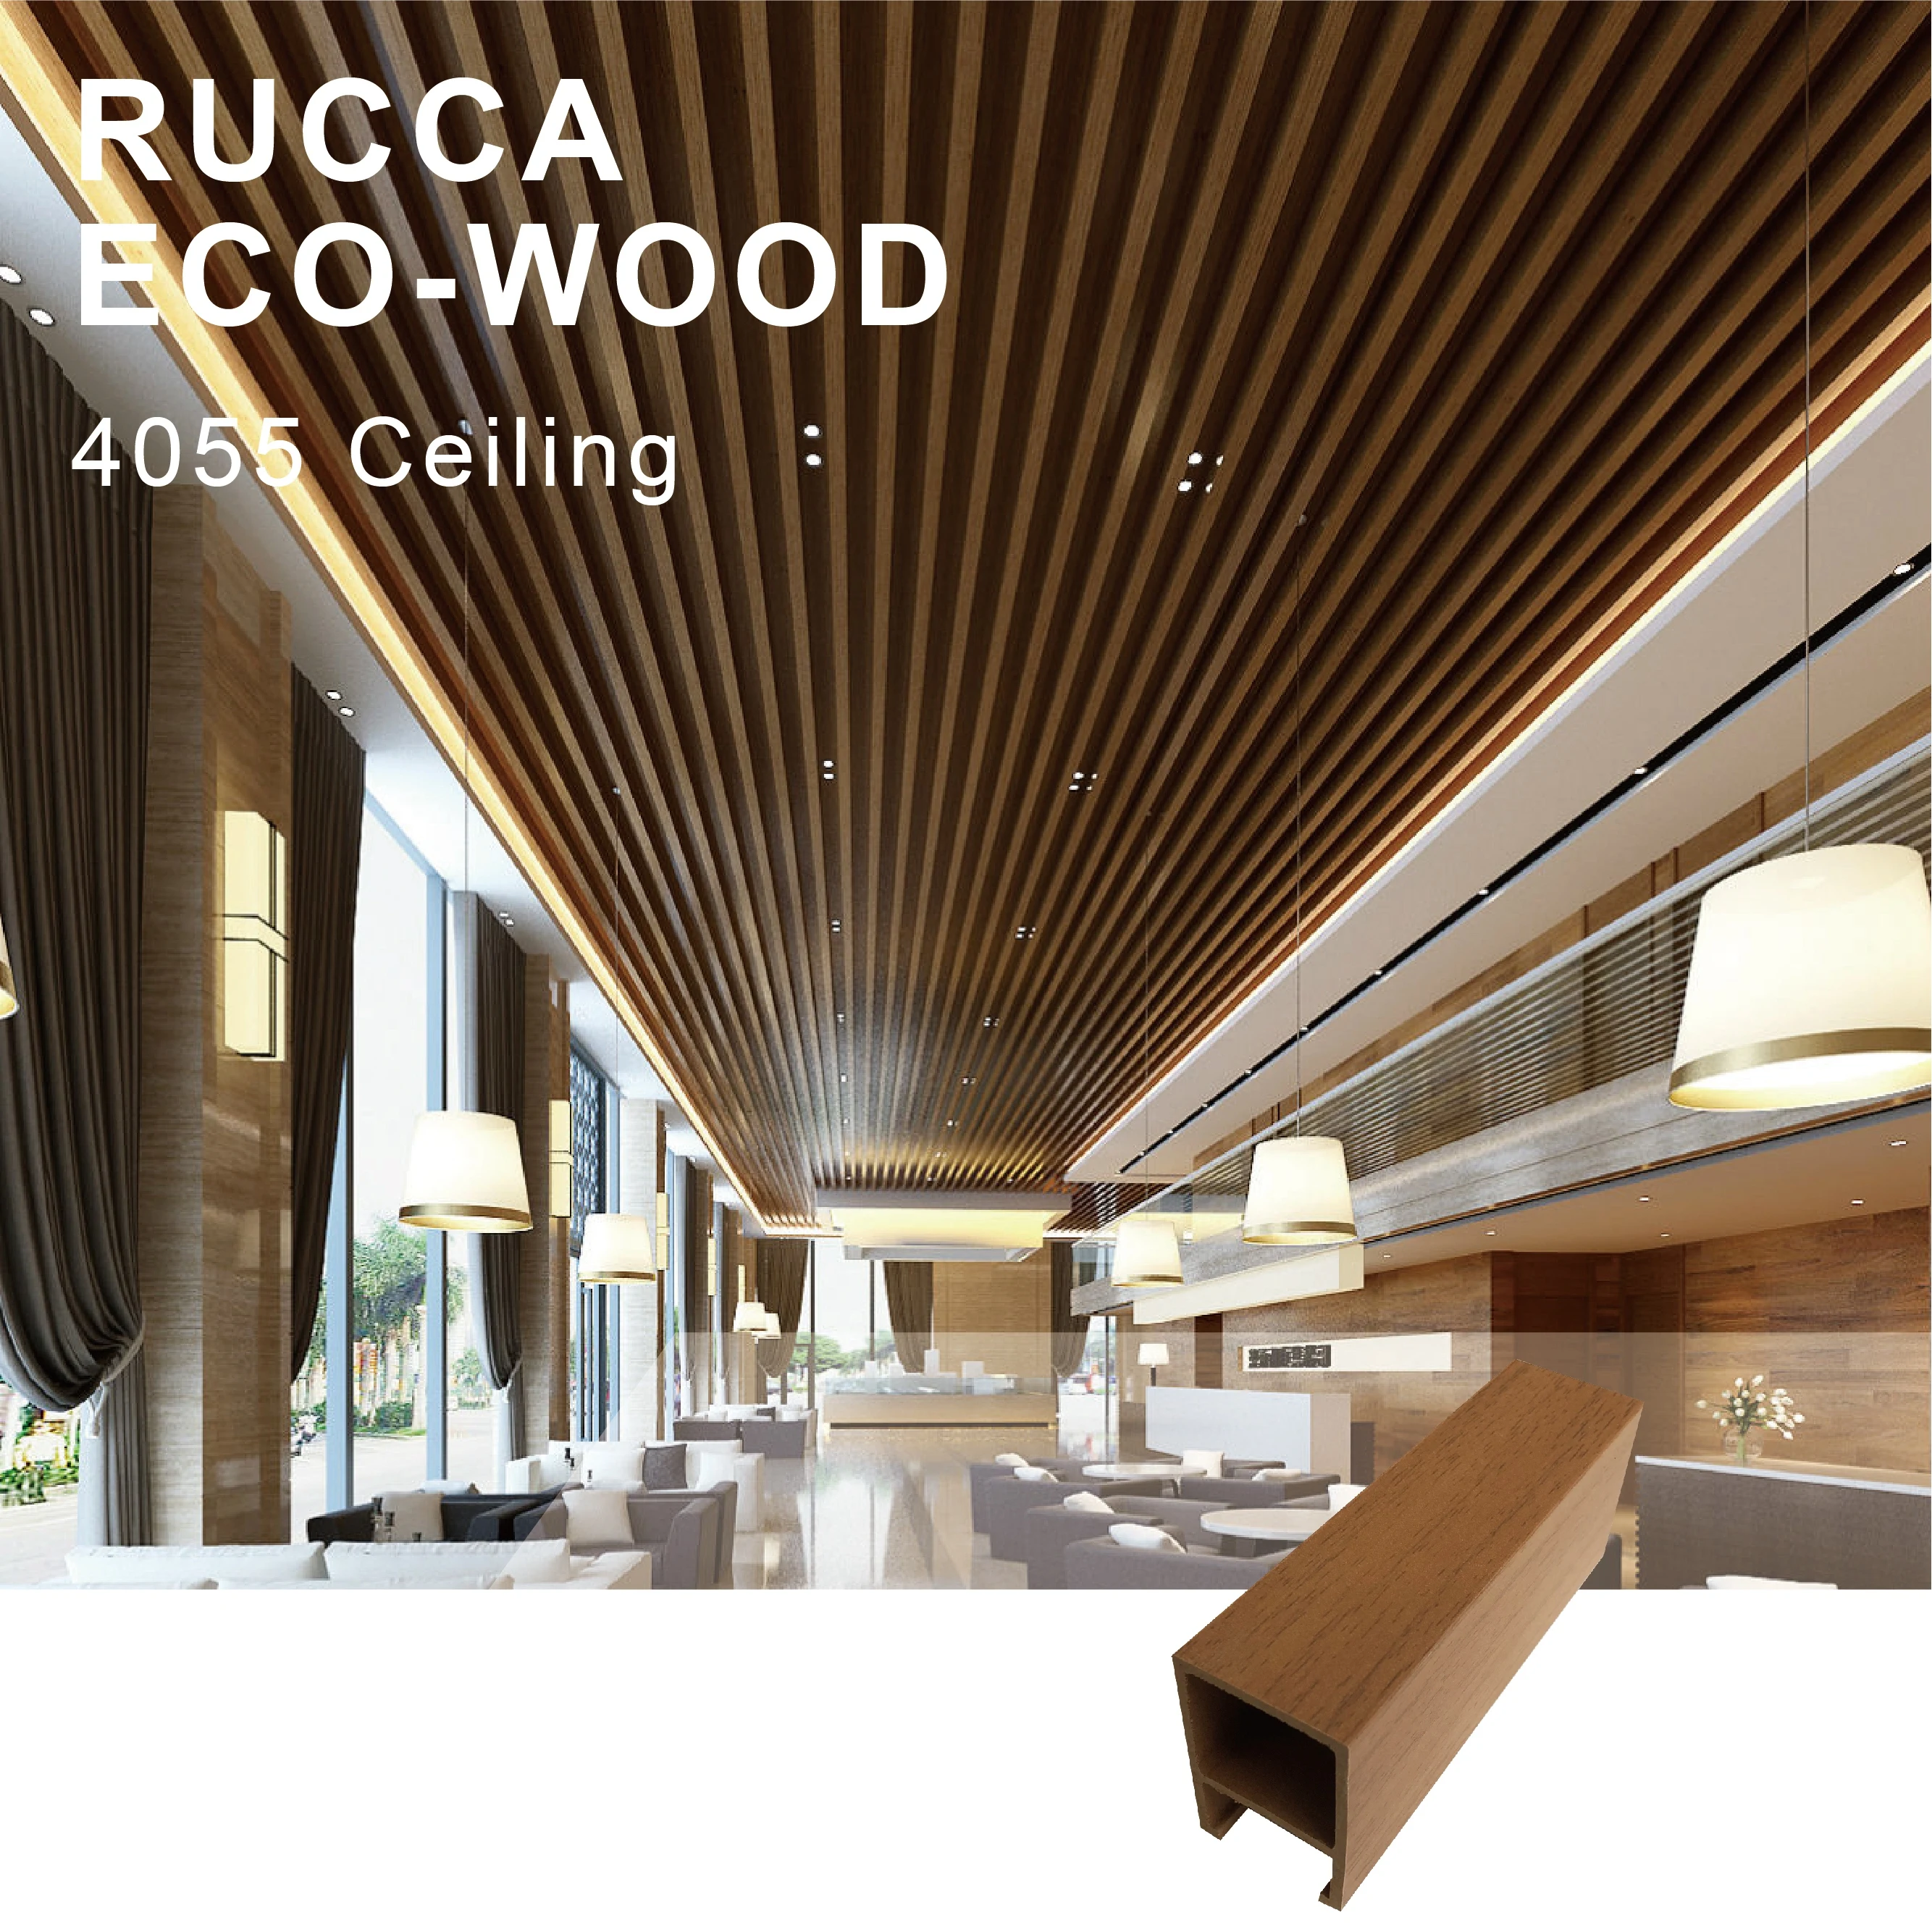  Rucca WPC/дерево ПВХ интерьер современный искусственный декоративный деревянный потолок для сборного дома 40*55